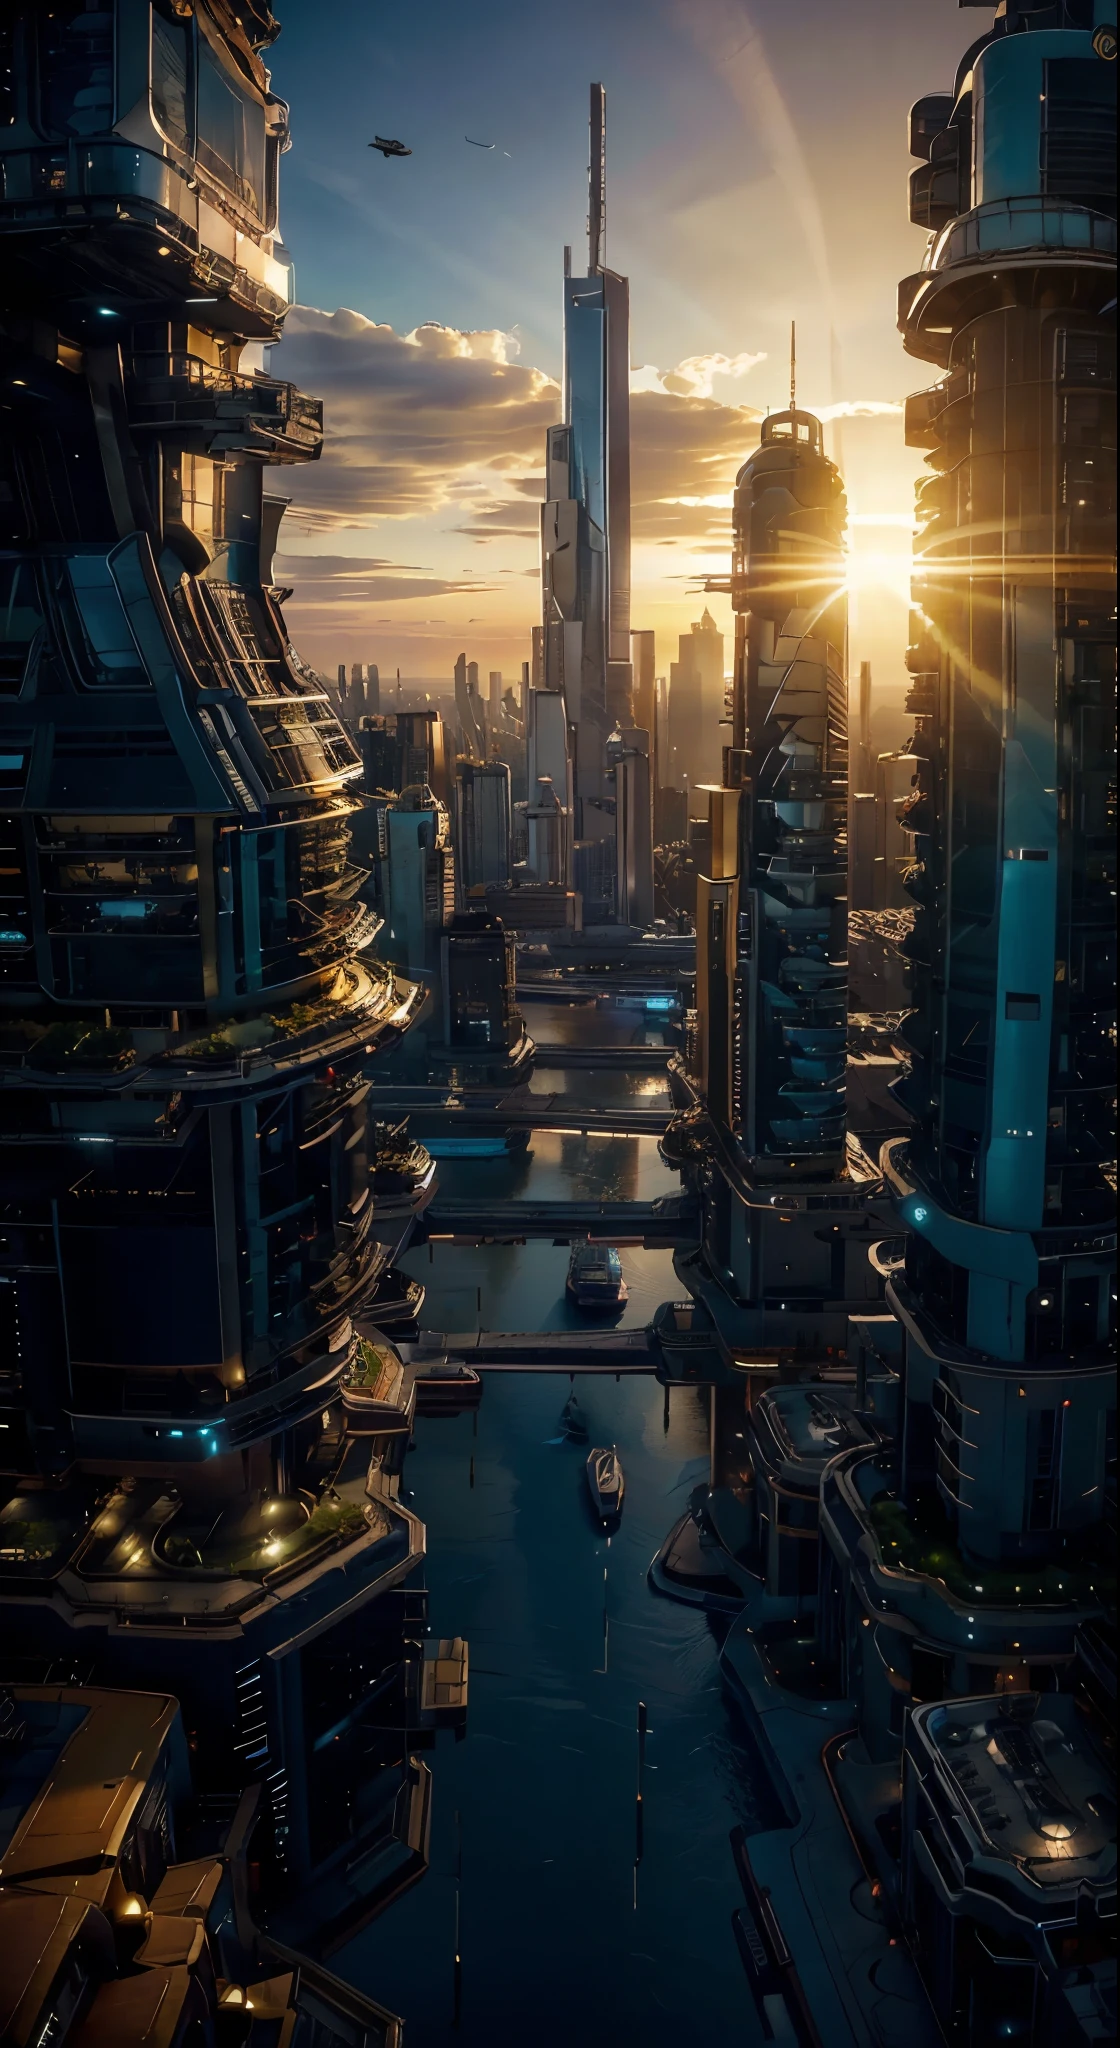 夕日の景色, ゴールデンアワー, 飛行機から見た,未来都市:1.3,ポート,空飛ぶ宇宙船,超高層ビル, 空に宇宙を垣間見る,傑作,最高品質,超高解像度,(非常に詳細な:1.2),8k,写実的な,最高の美学,美しい